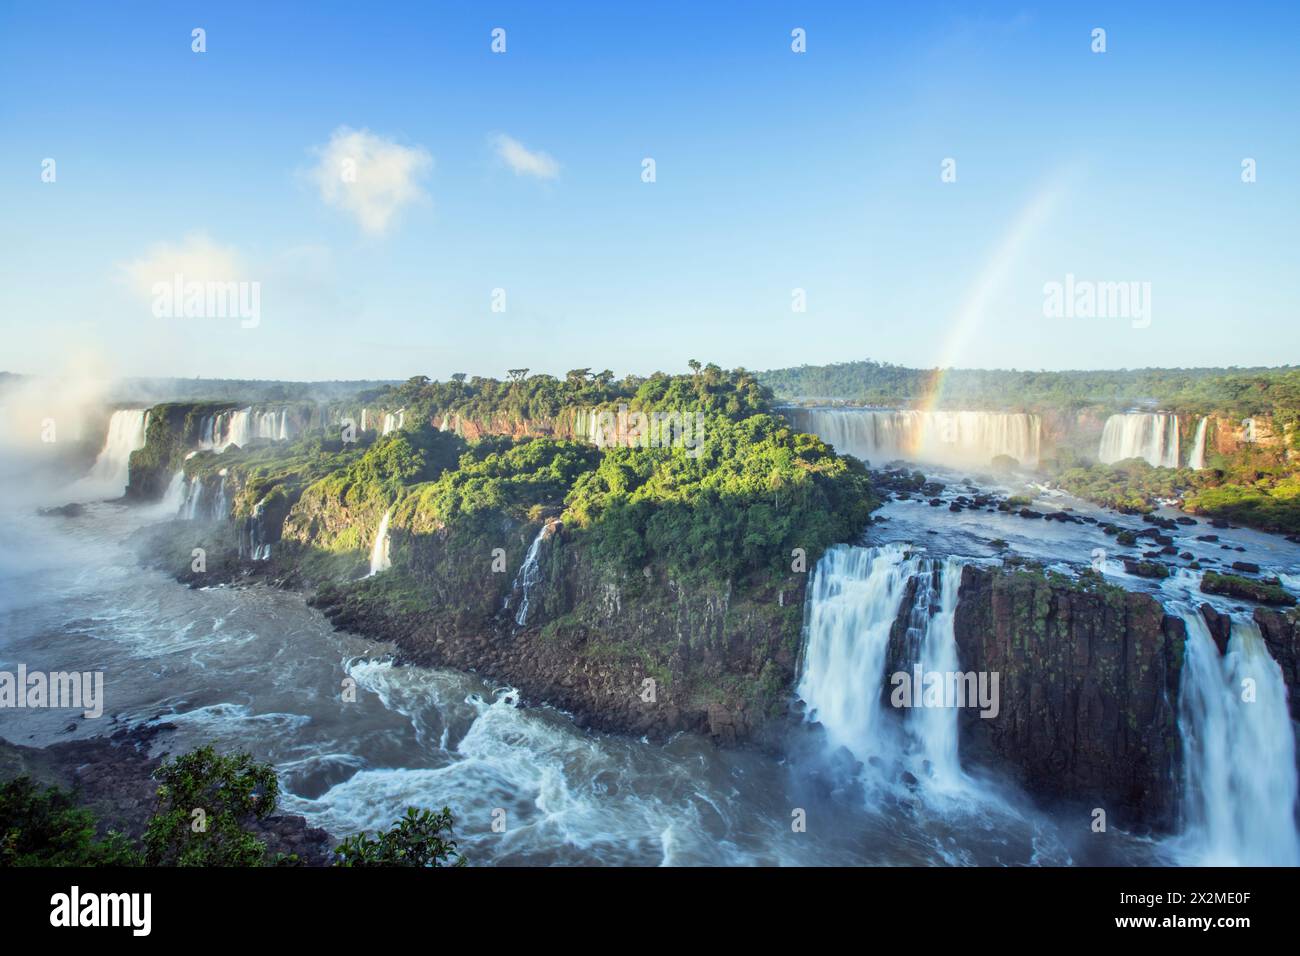 Géographie / voyage, Brésil /, Parana, chutes d'eau d'Iguaçu / Iguazu et rivière Parana, AUTORISATION-SUPPLÉMENTAIRE-INFO-NOT-AVAILABLE Banque D'Images